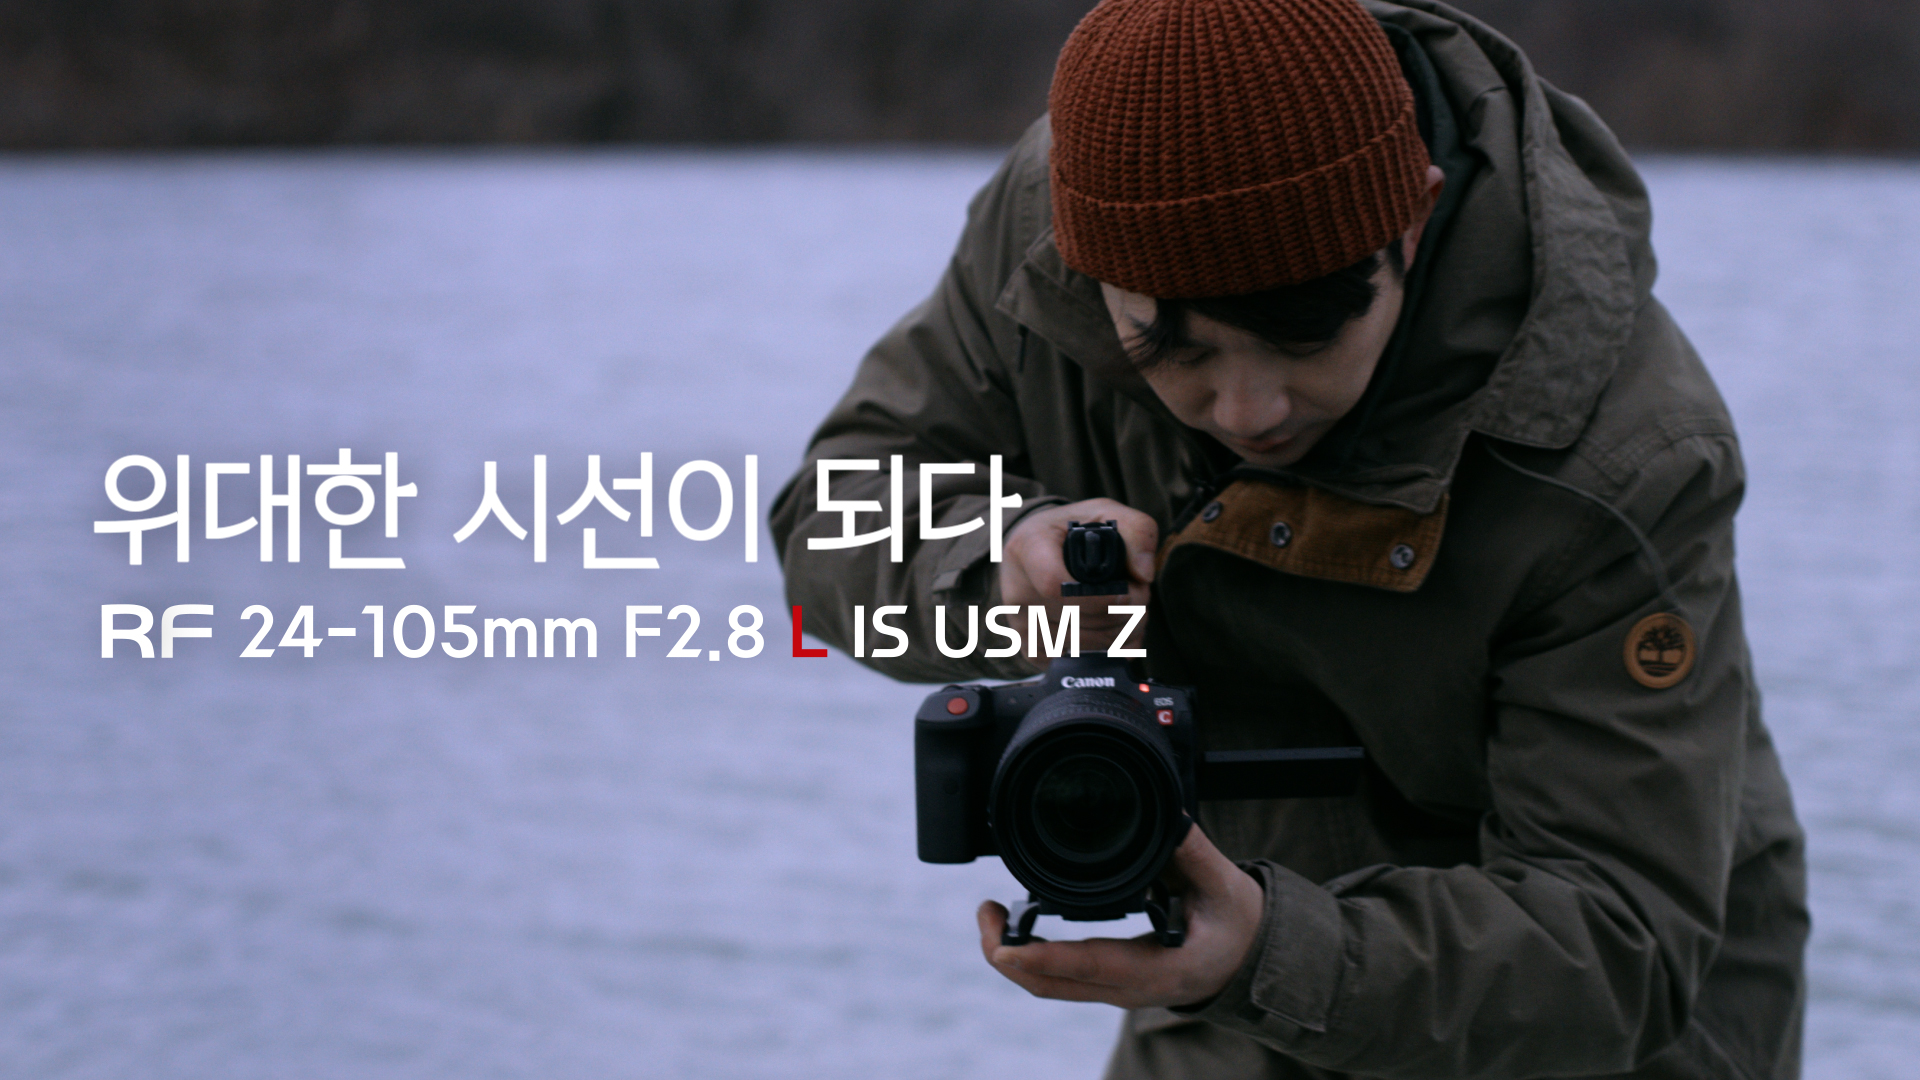 [위대한 시선] RF24-105mm F2.8 L IS USM Z